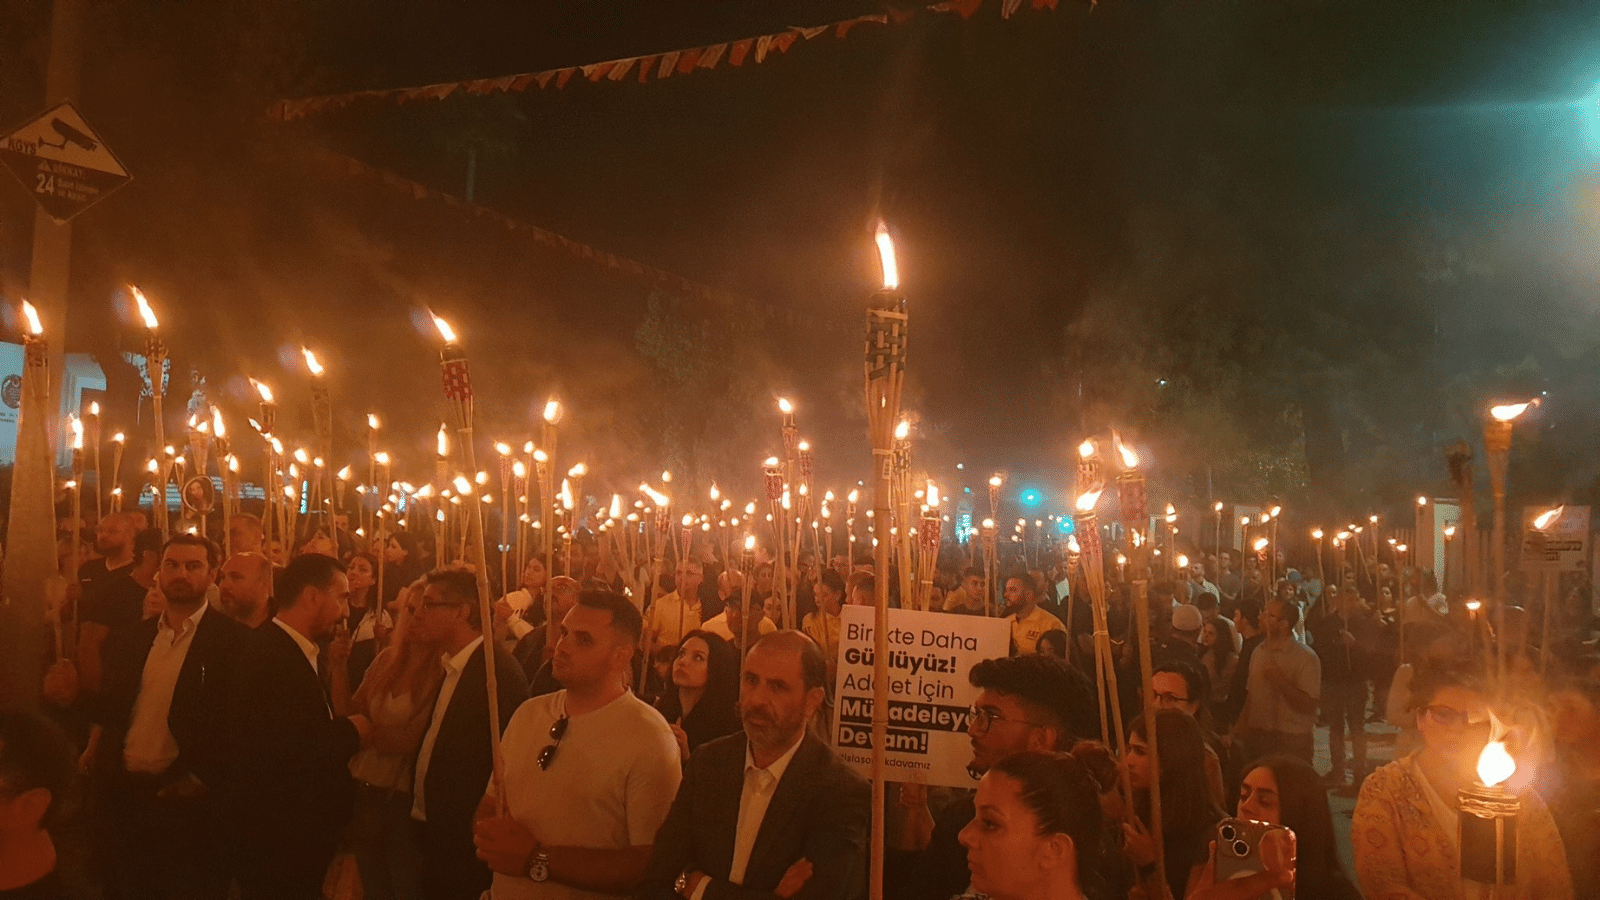 KKTC’li öğrenciler için “Adalete Işık Tut” yürüyüşü düzenlendi